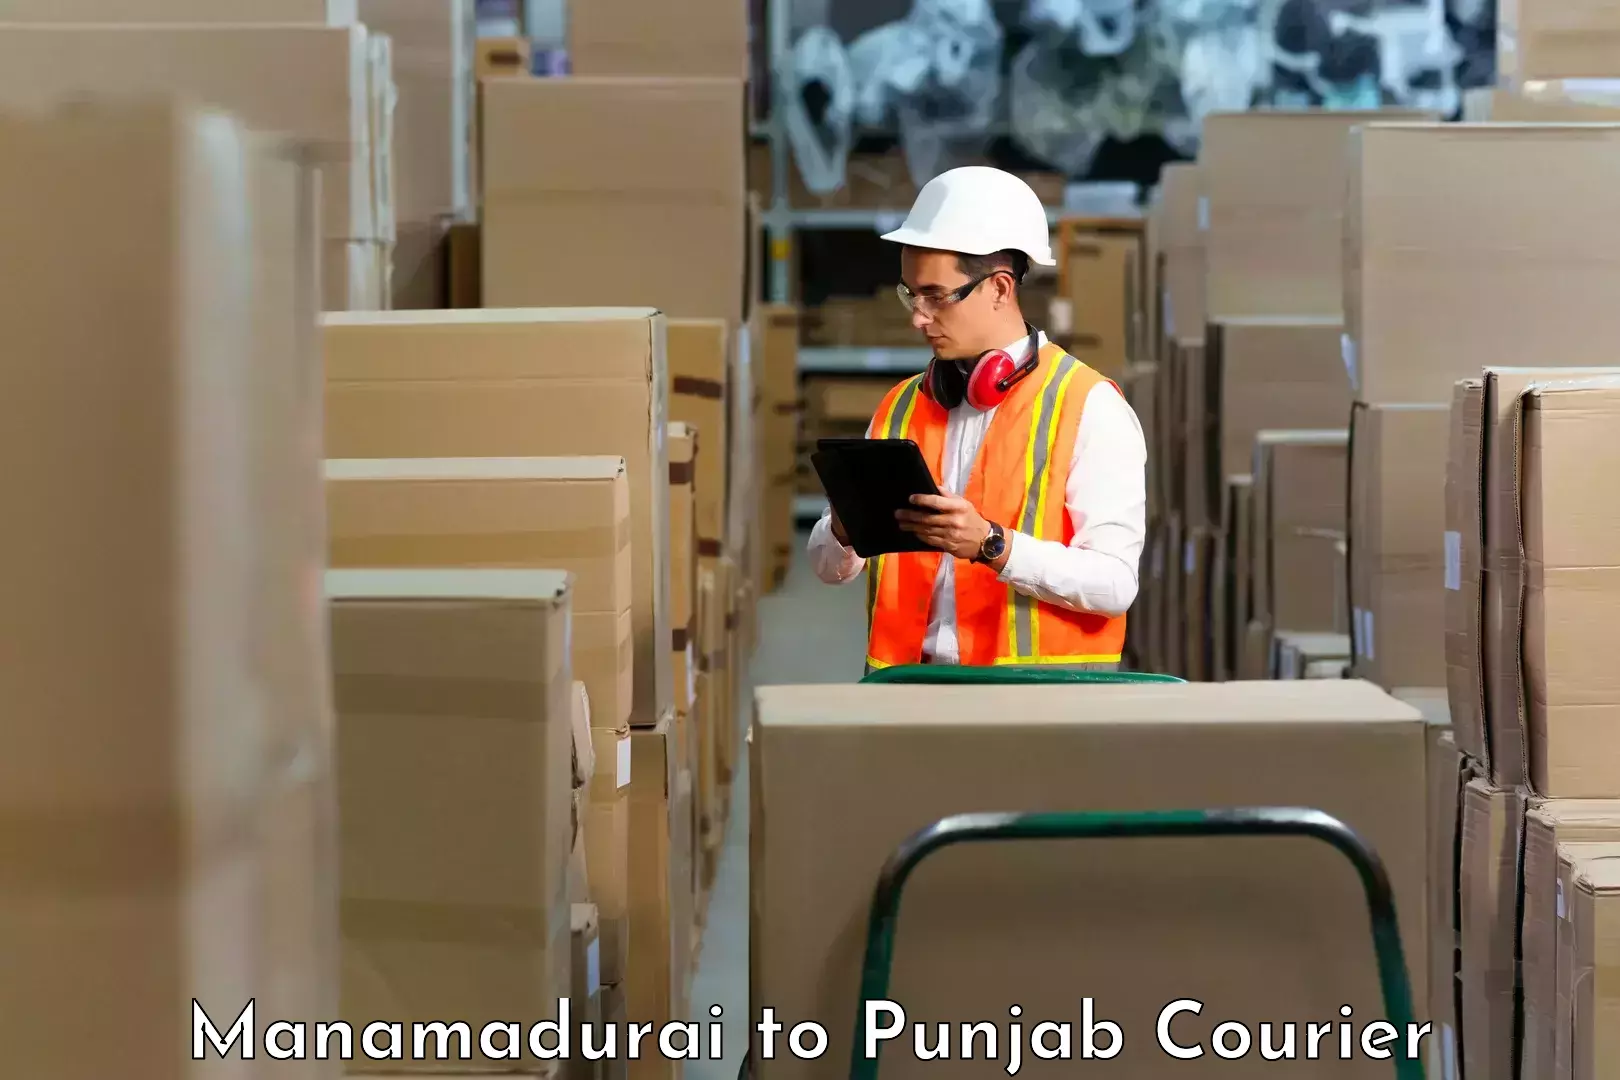 Smart shipping technology Manamadurai to Amritsar